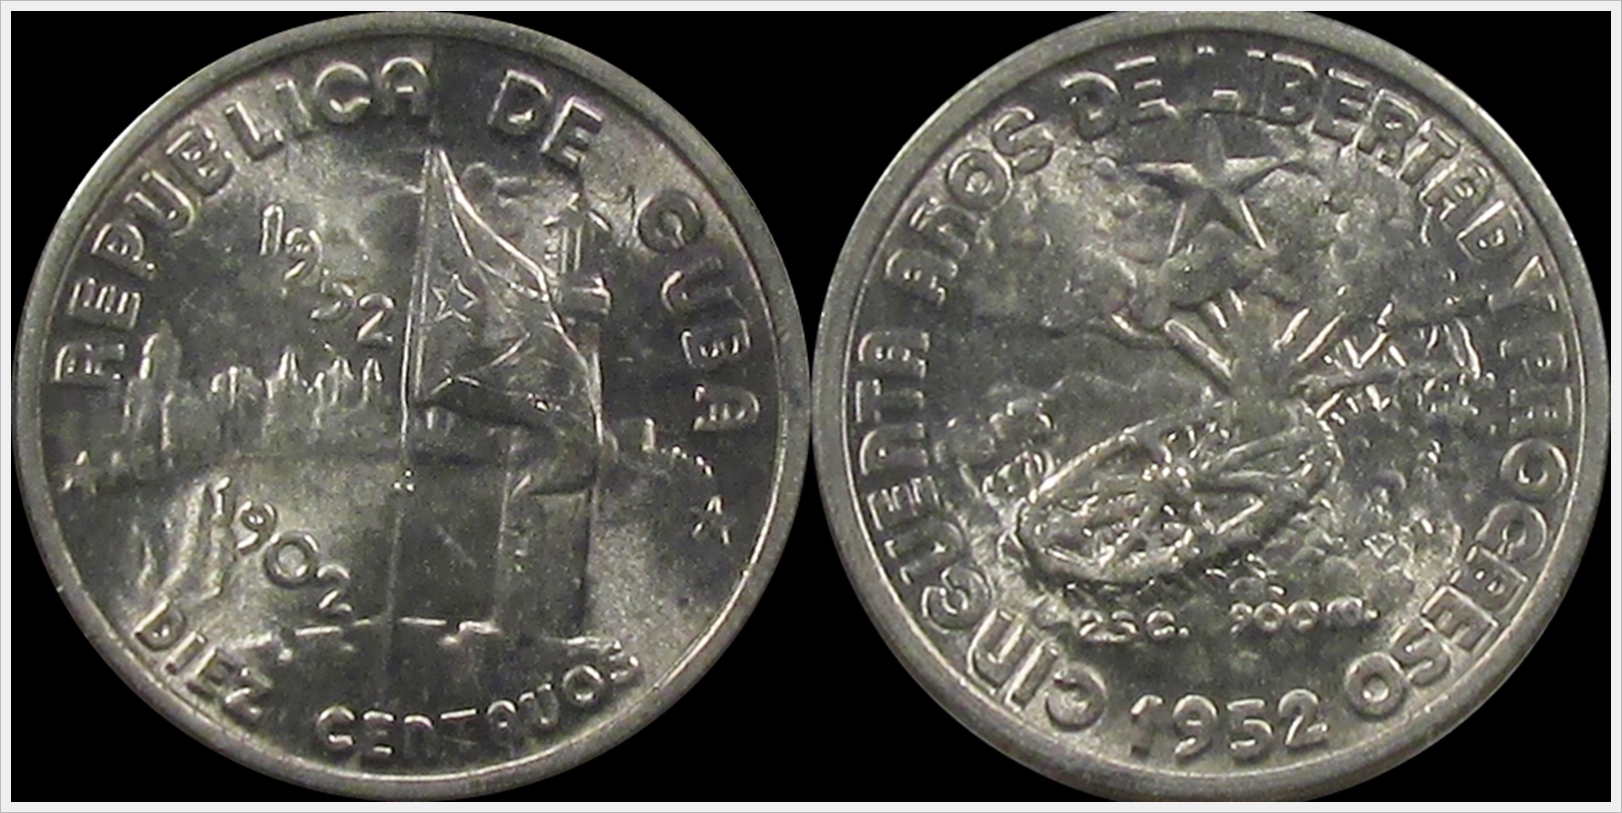 Cuba 1952 10 Centavos.jpg